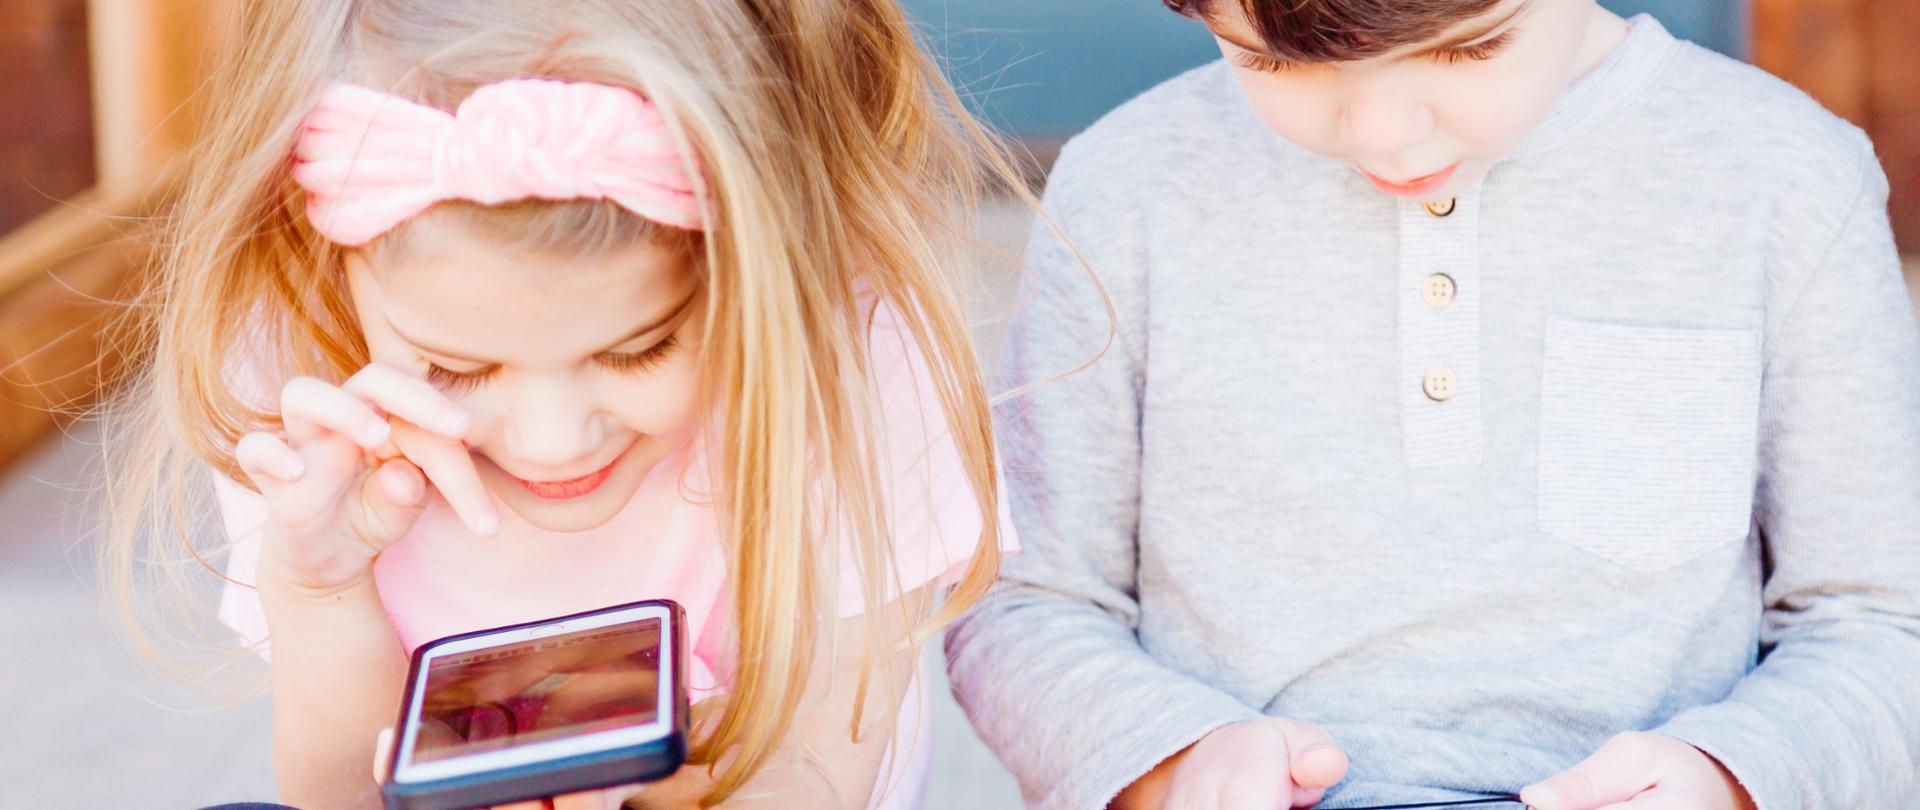 Mała dziewczynka i chłopiec bawiący się smartfonami